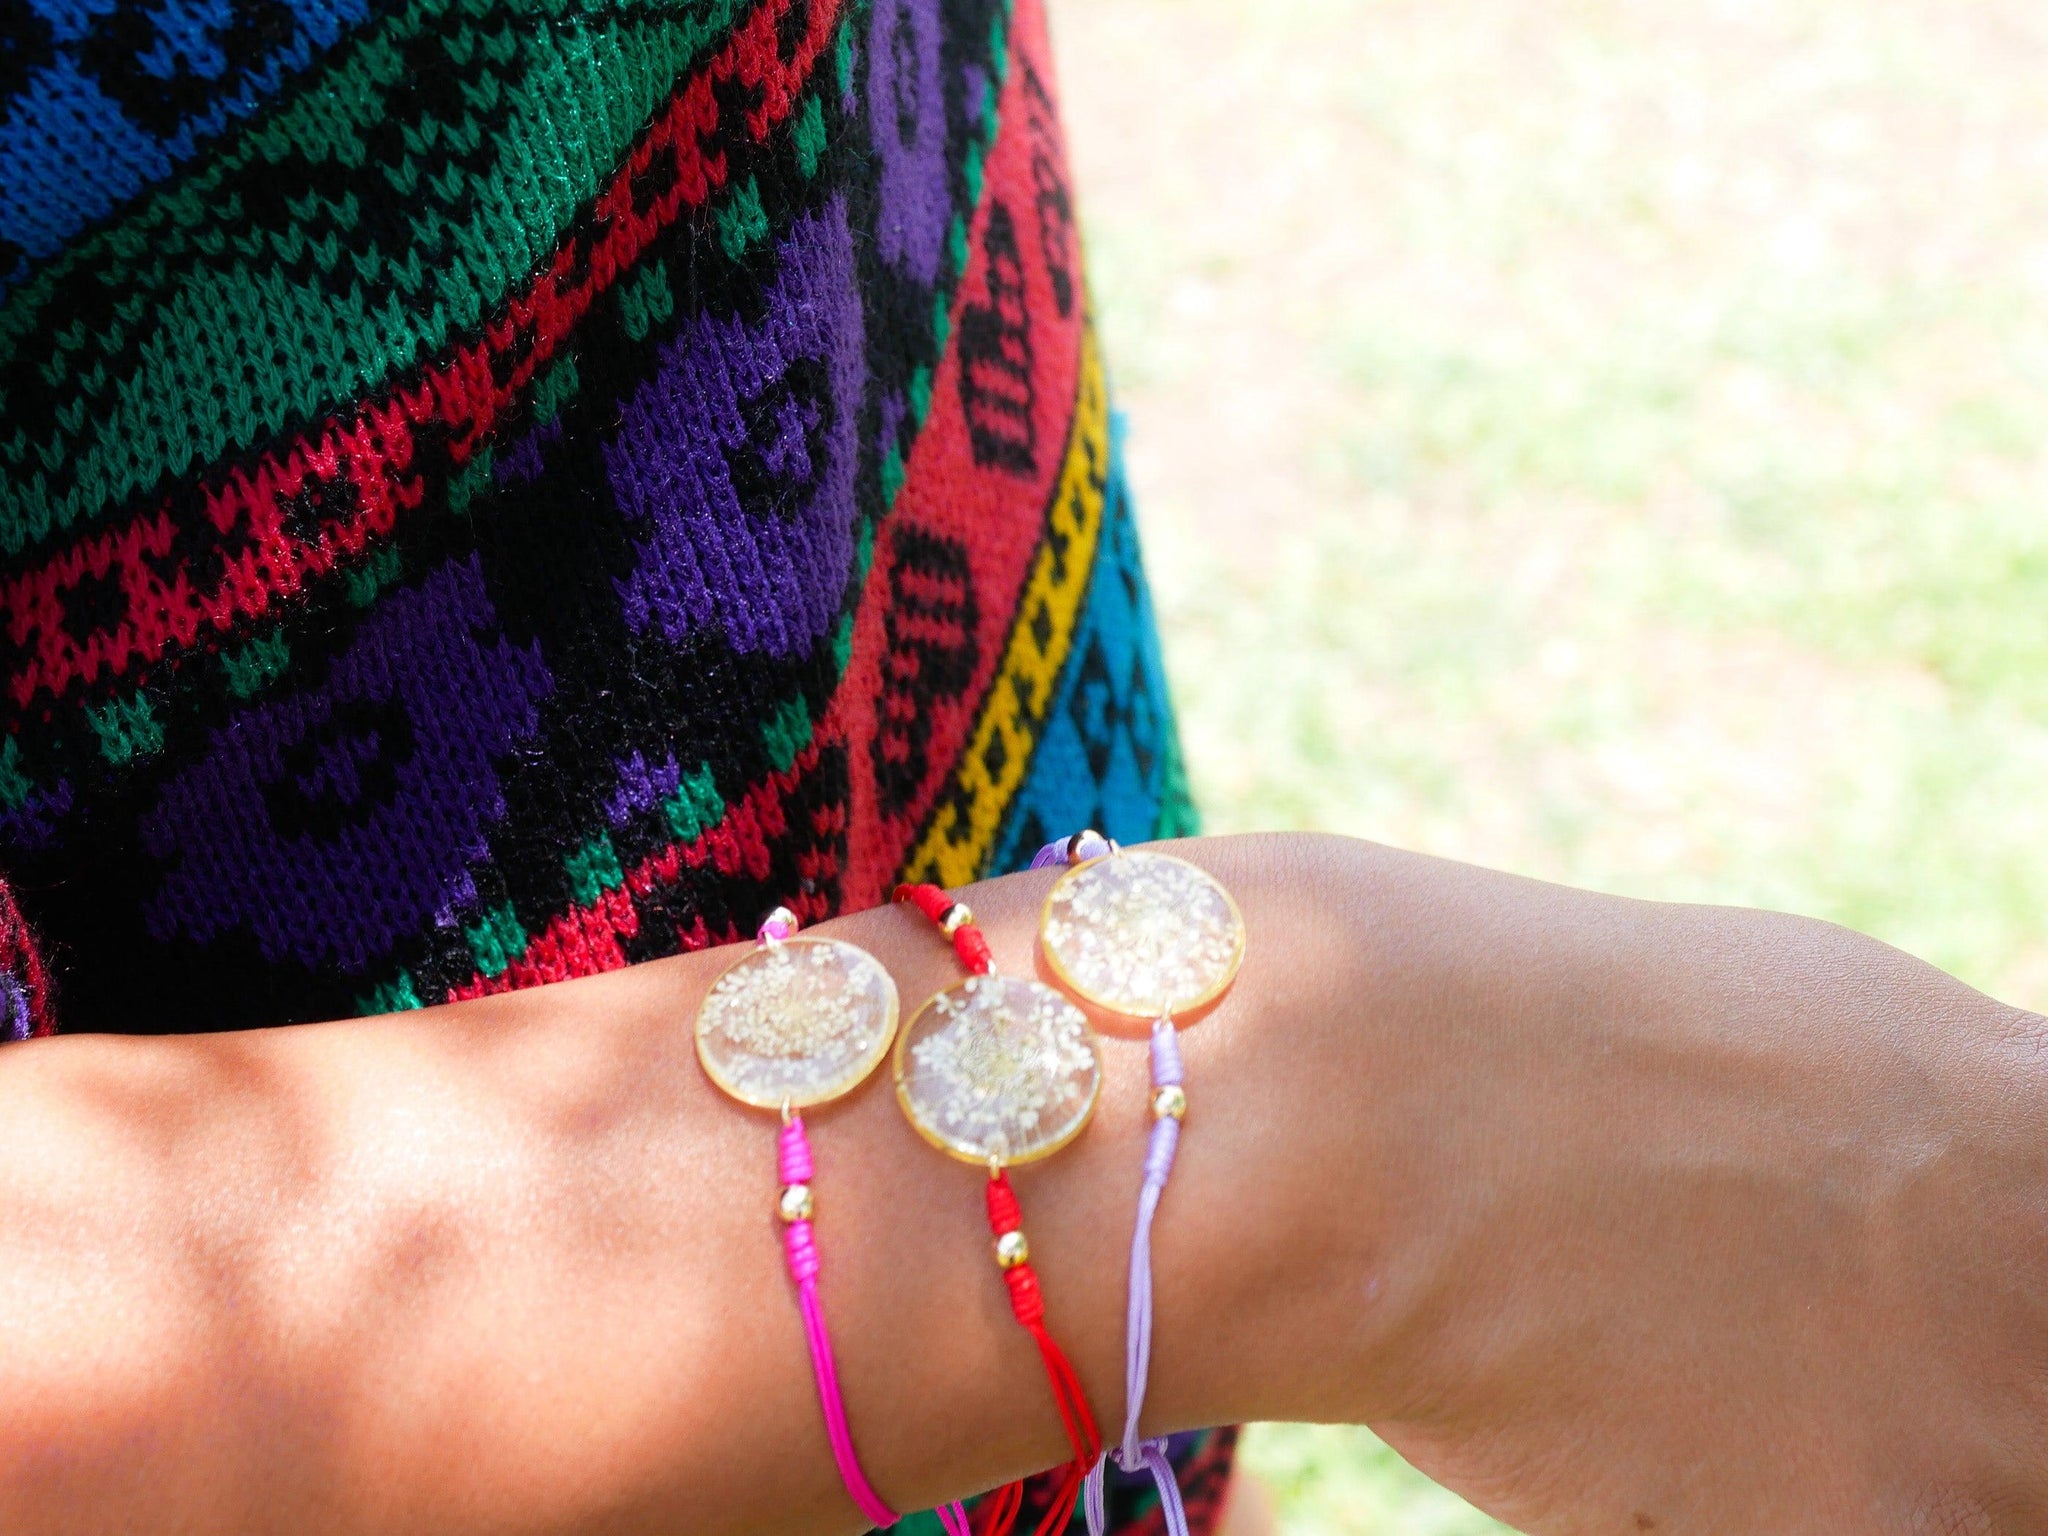  Pressed Flower Bracelets,Bracelet for Women,Handmade